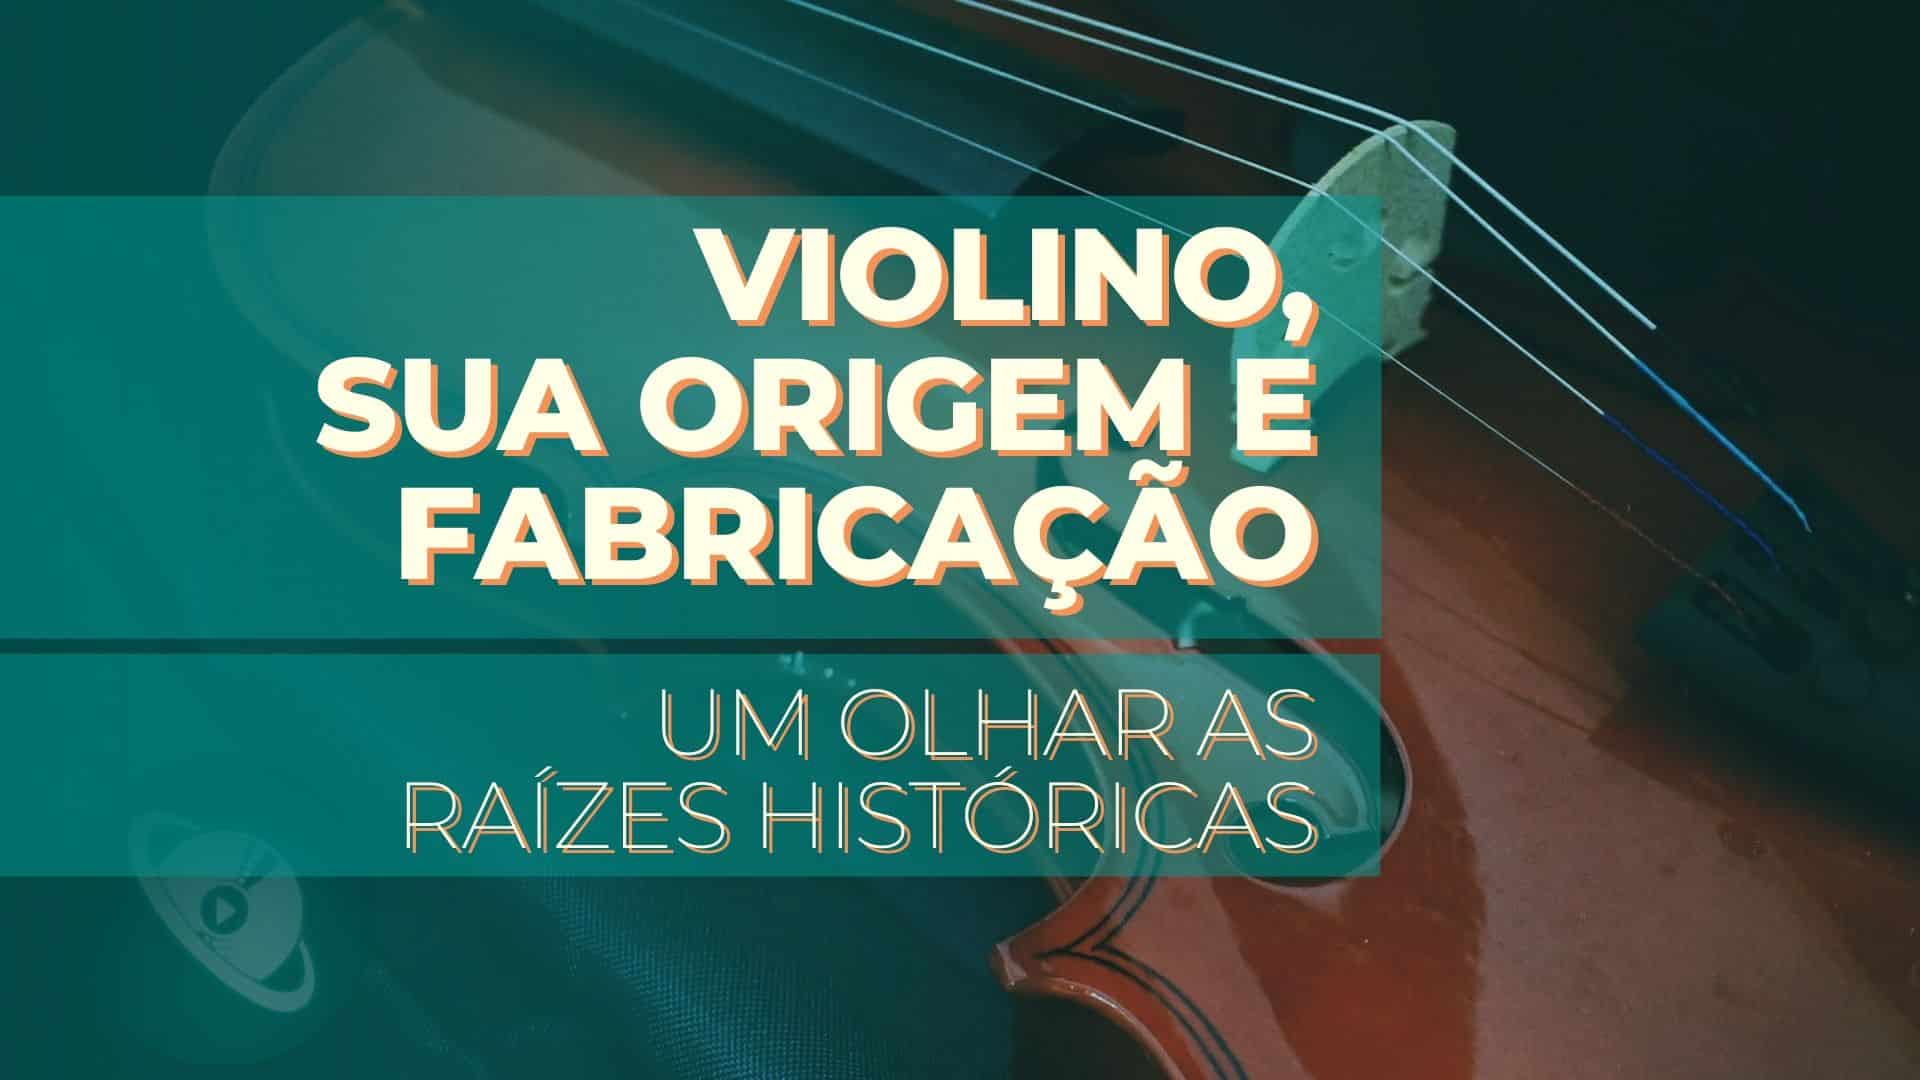 O Violino, sua origem e fabricação: um olhar às raízes históricas.